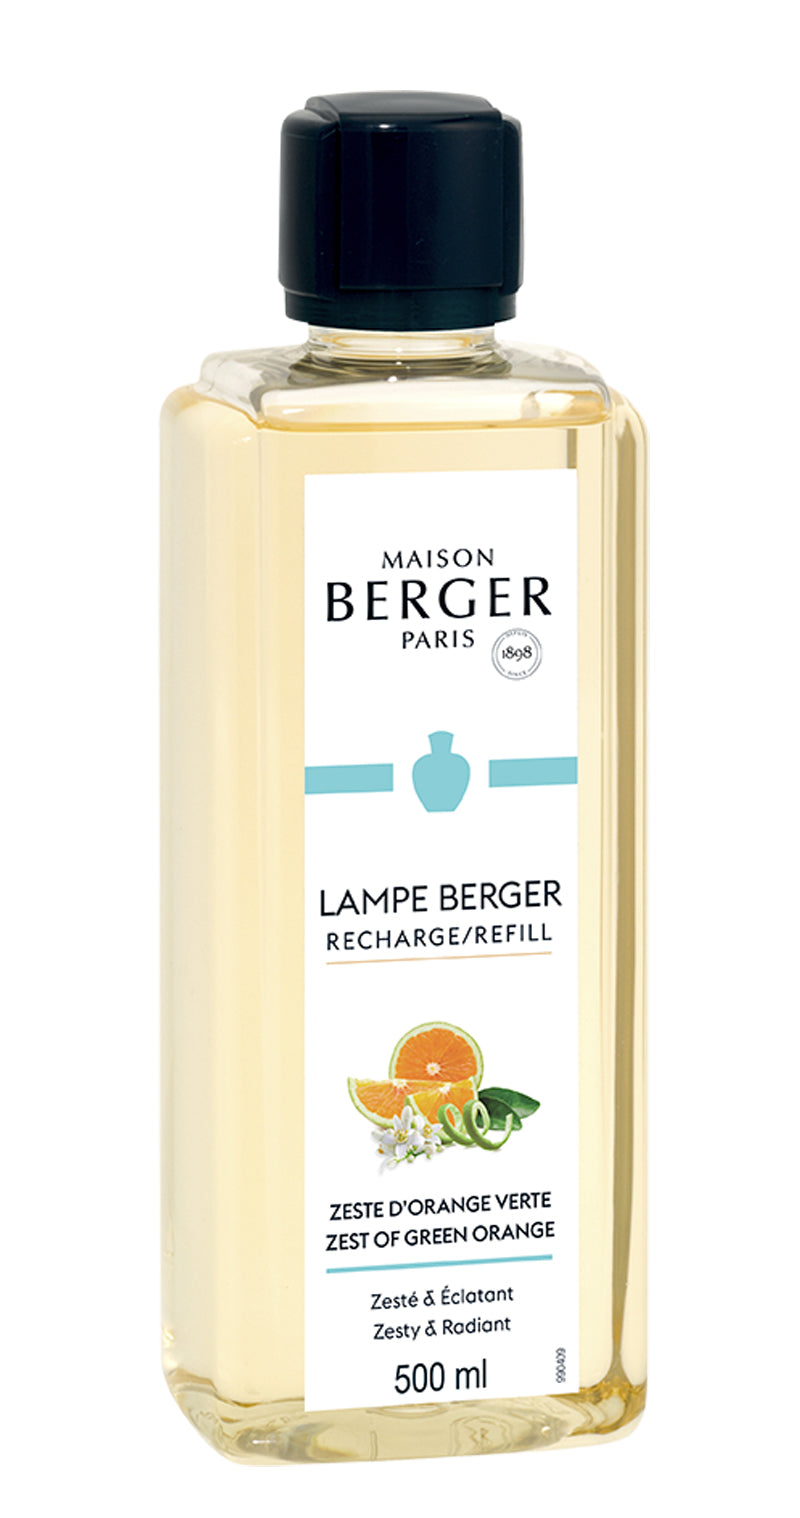 Lampe Berger Duft Prickelnde Orangenzesten 500 ml von Maison Berger